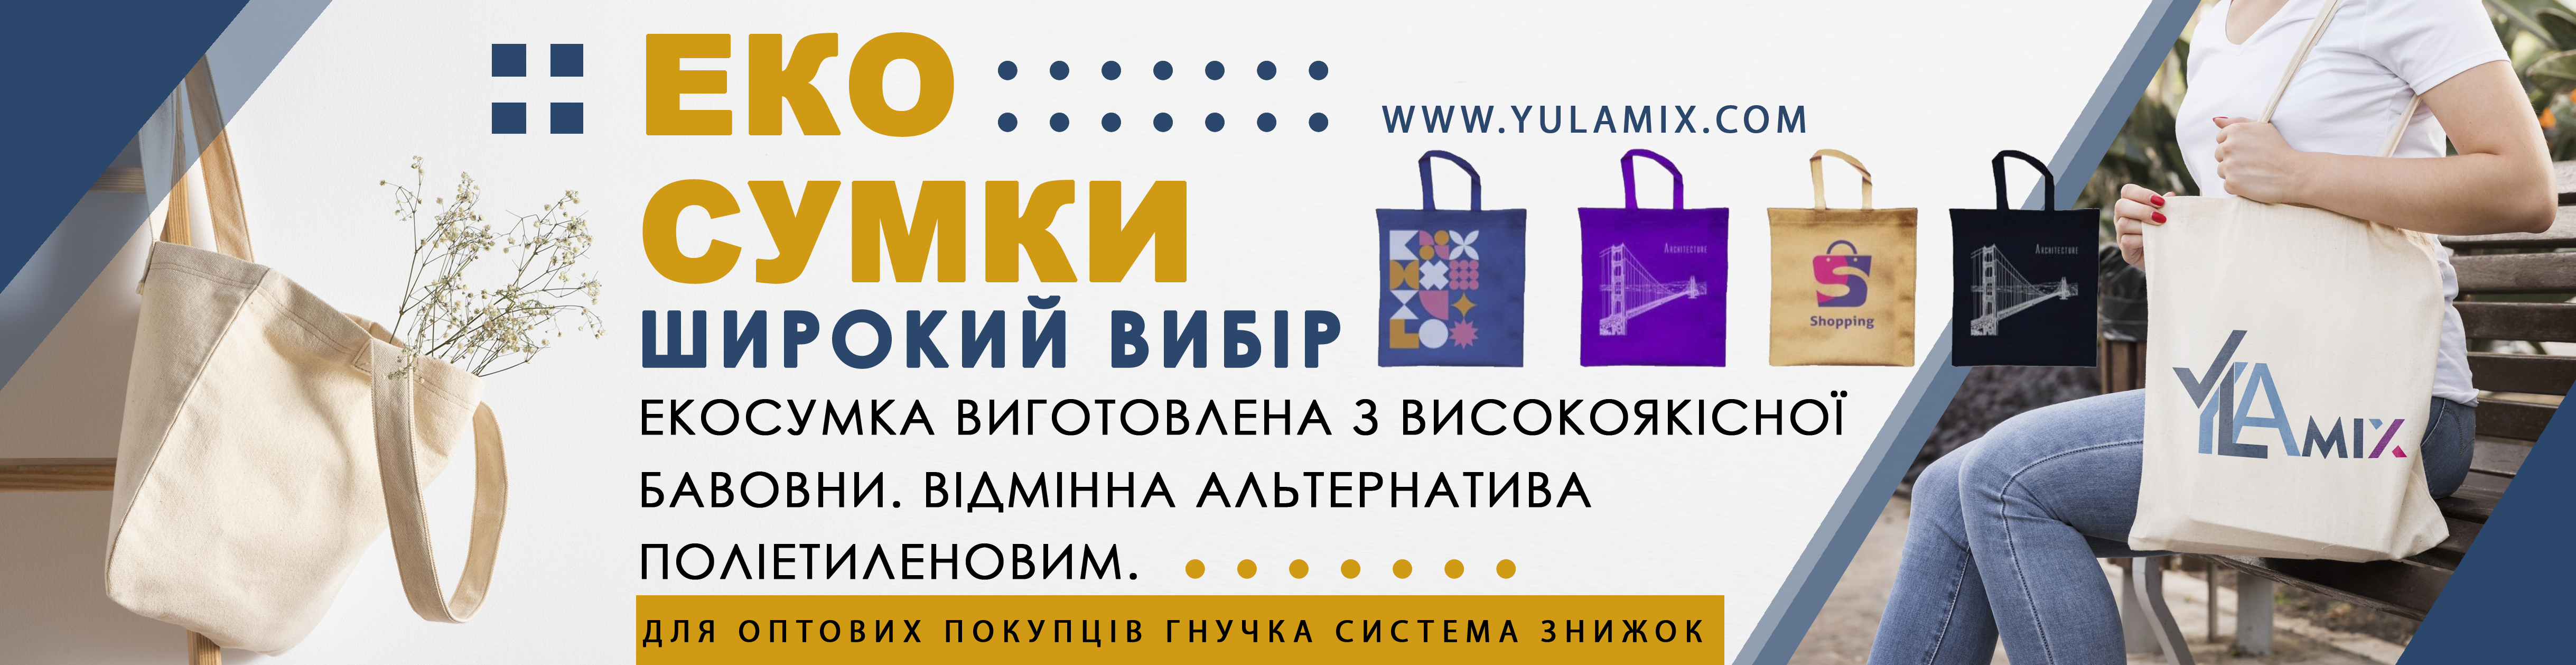 yulamix top banner 1